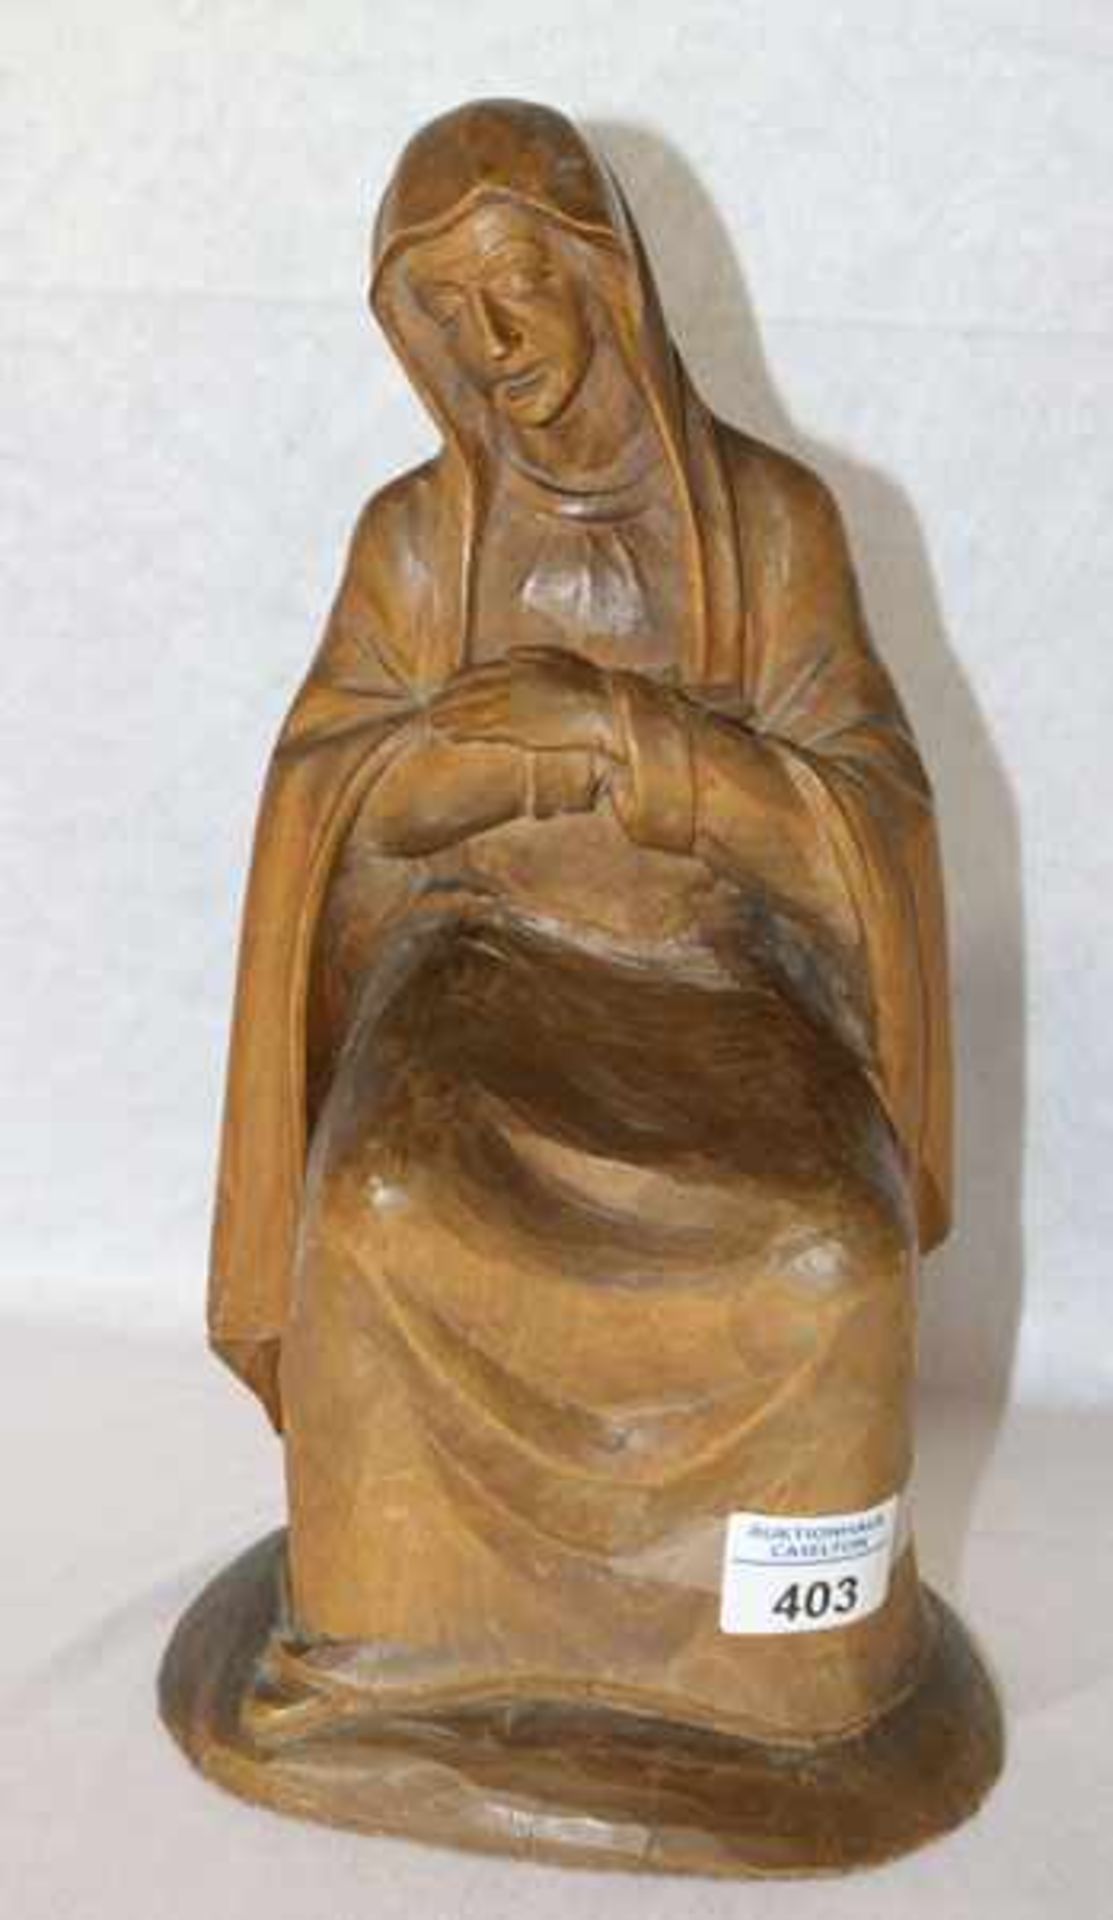 Holz Figurenskulptur 'Maria', signiert A. Leismüller, datiert 1949, gebeizt, H 32 cm, B 17 cm, T